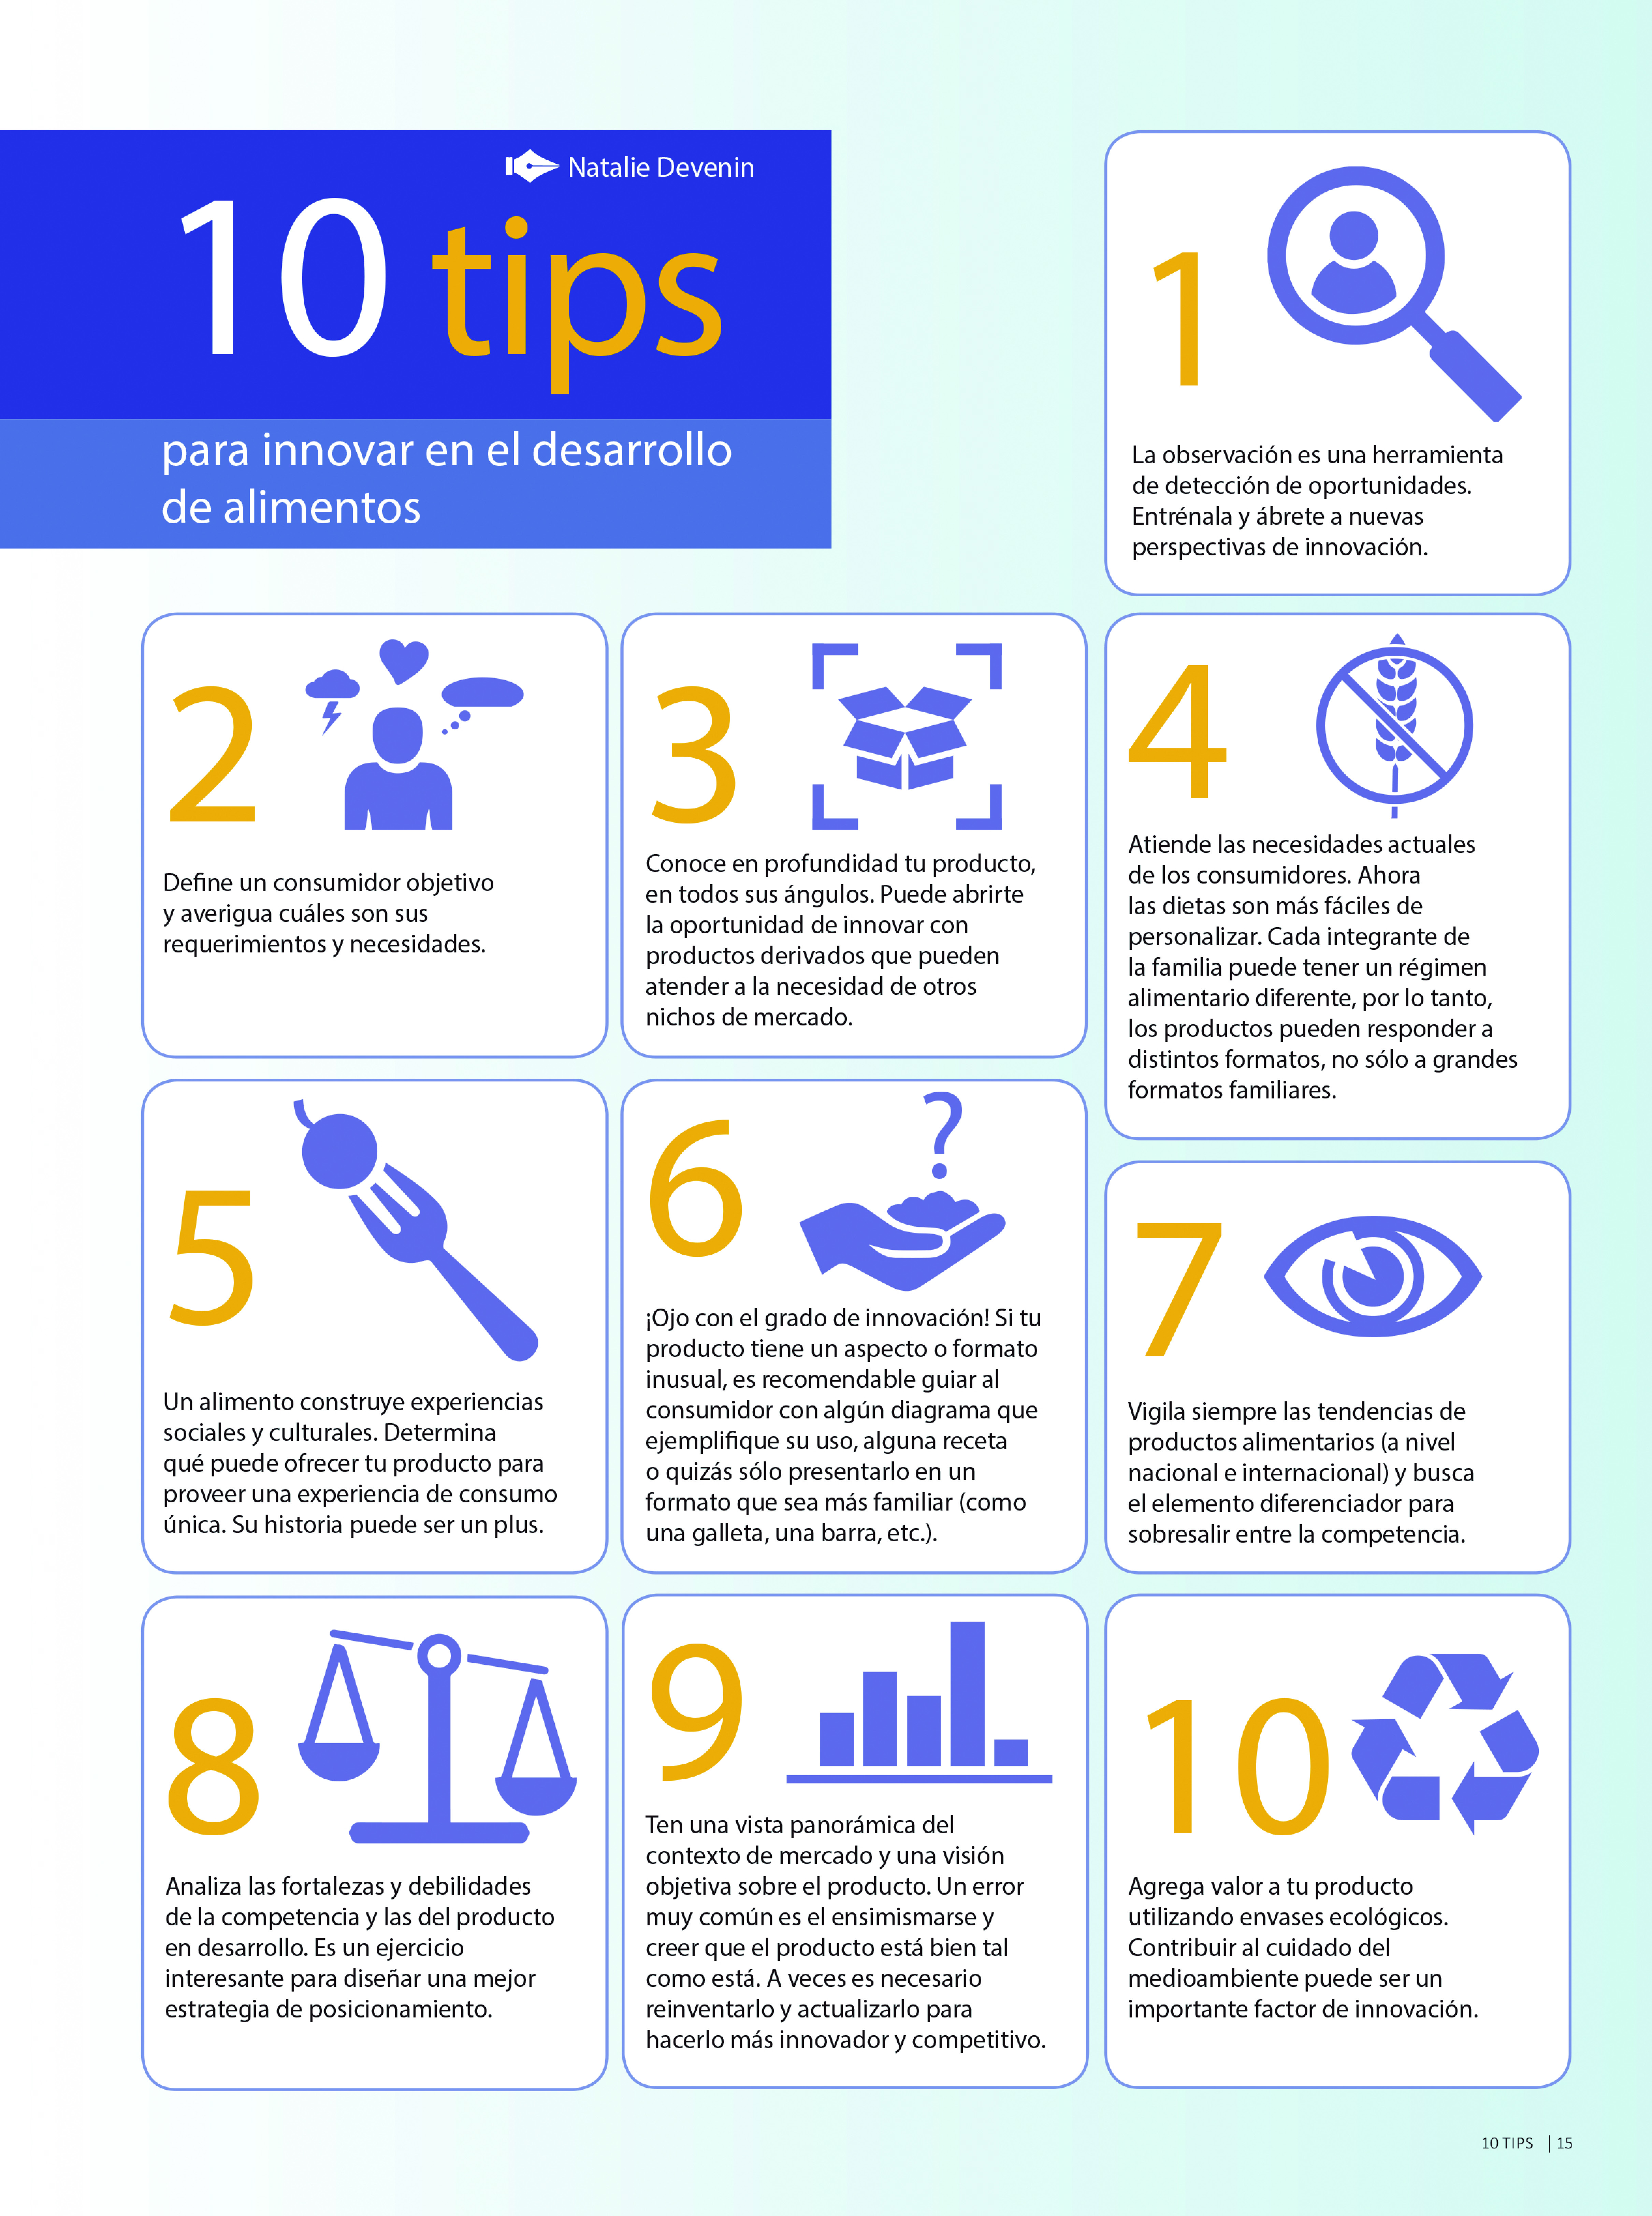 10 tips para innovar